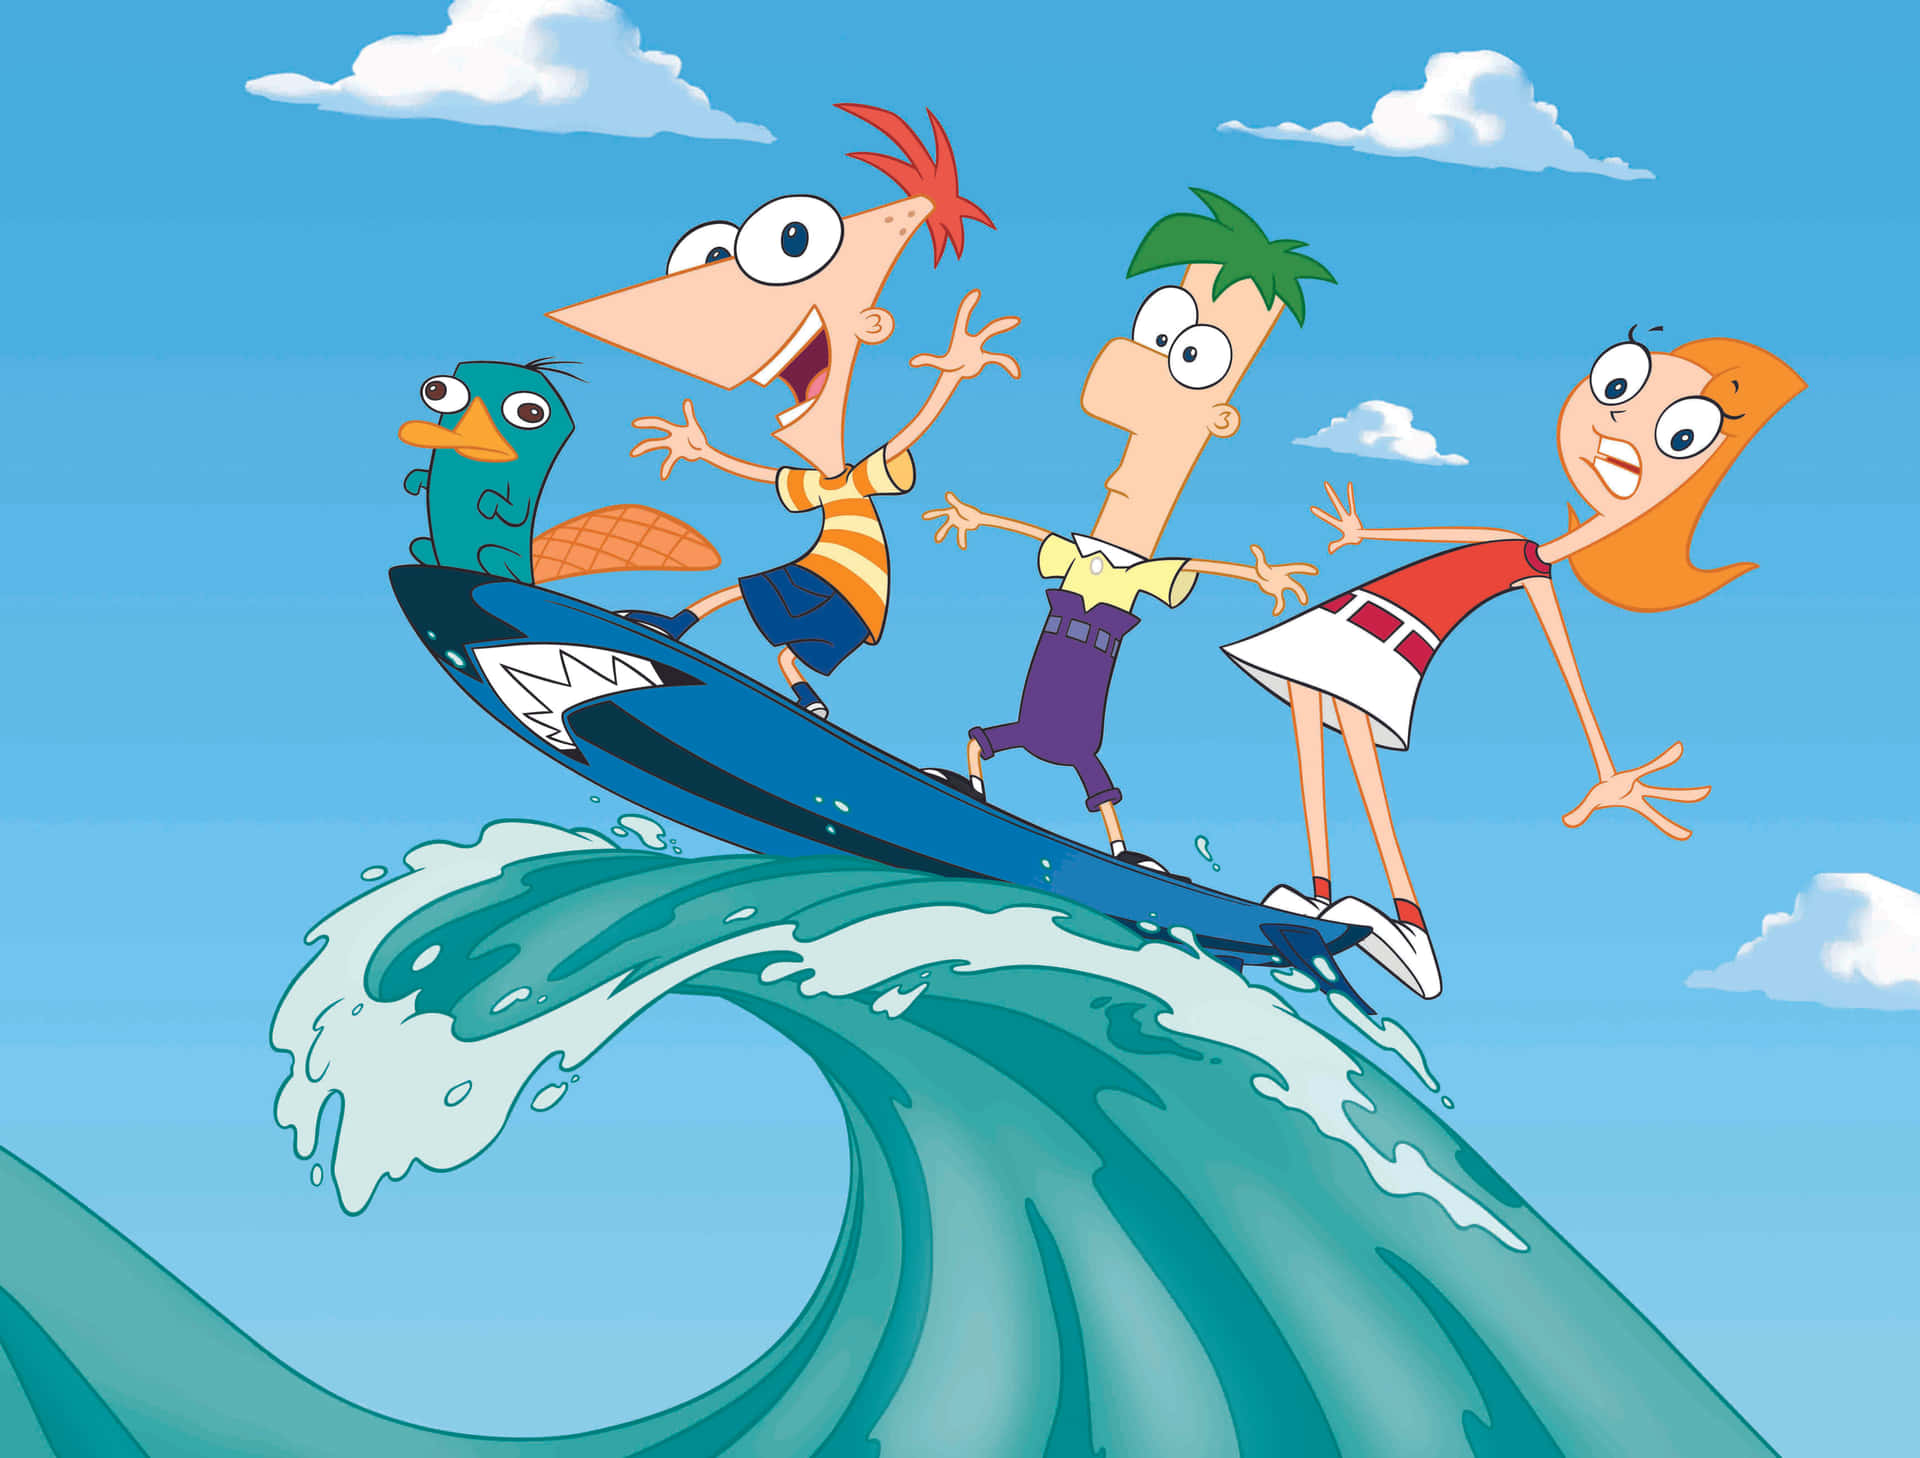 Phineasy Ferb Emprenden Nuevas Aventuras En Su Patio Trasero.